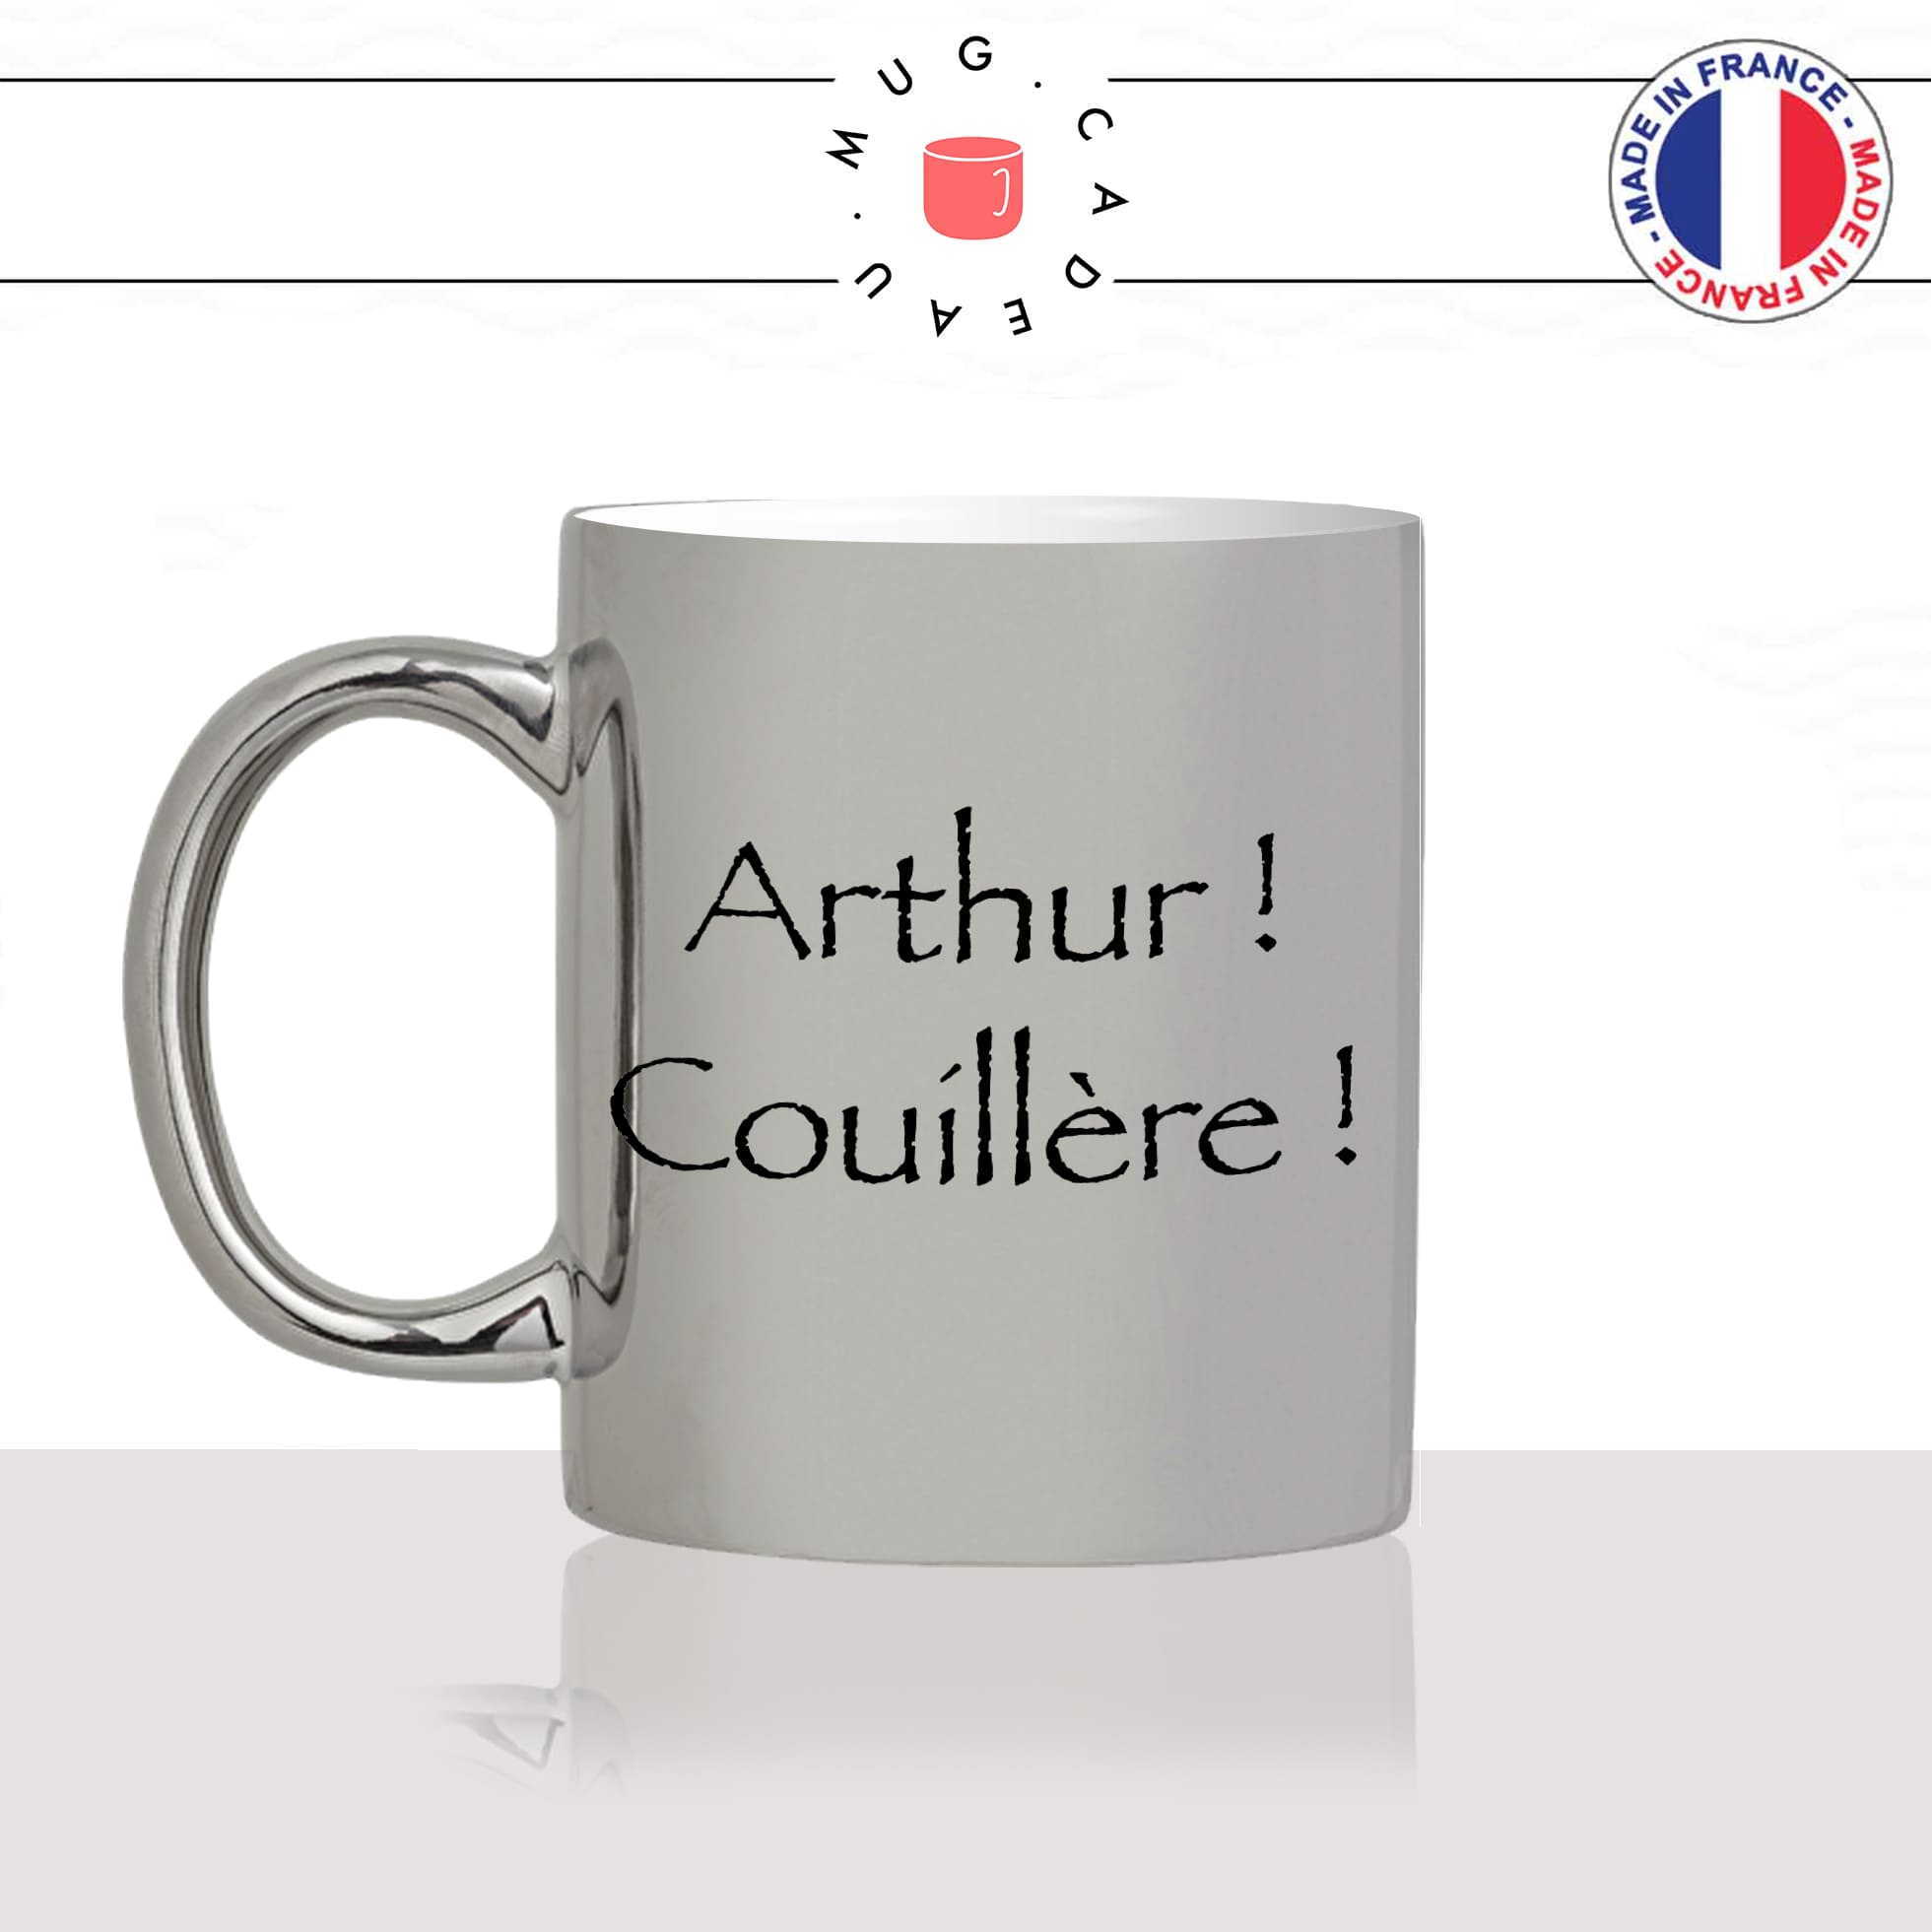 mug-tasse-argent-argenté-silver-série-francaise-culte-kaamelott-arthur-couillere-roi-burgonde-humour-télé-idée-cadeau-fun-cool-café-thé